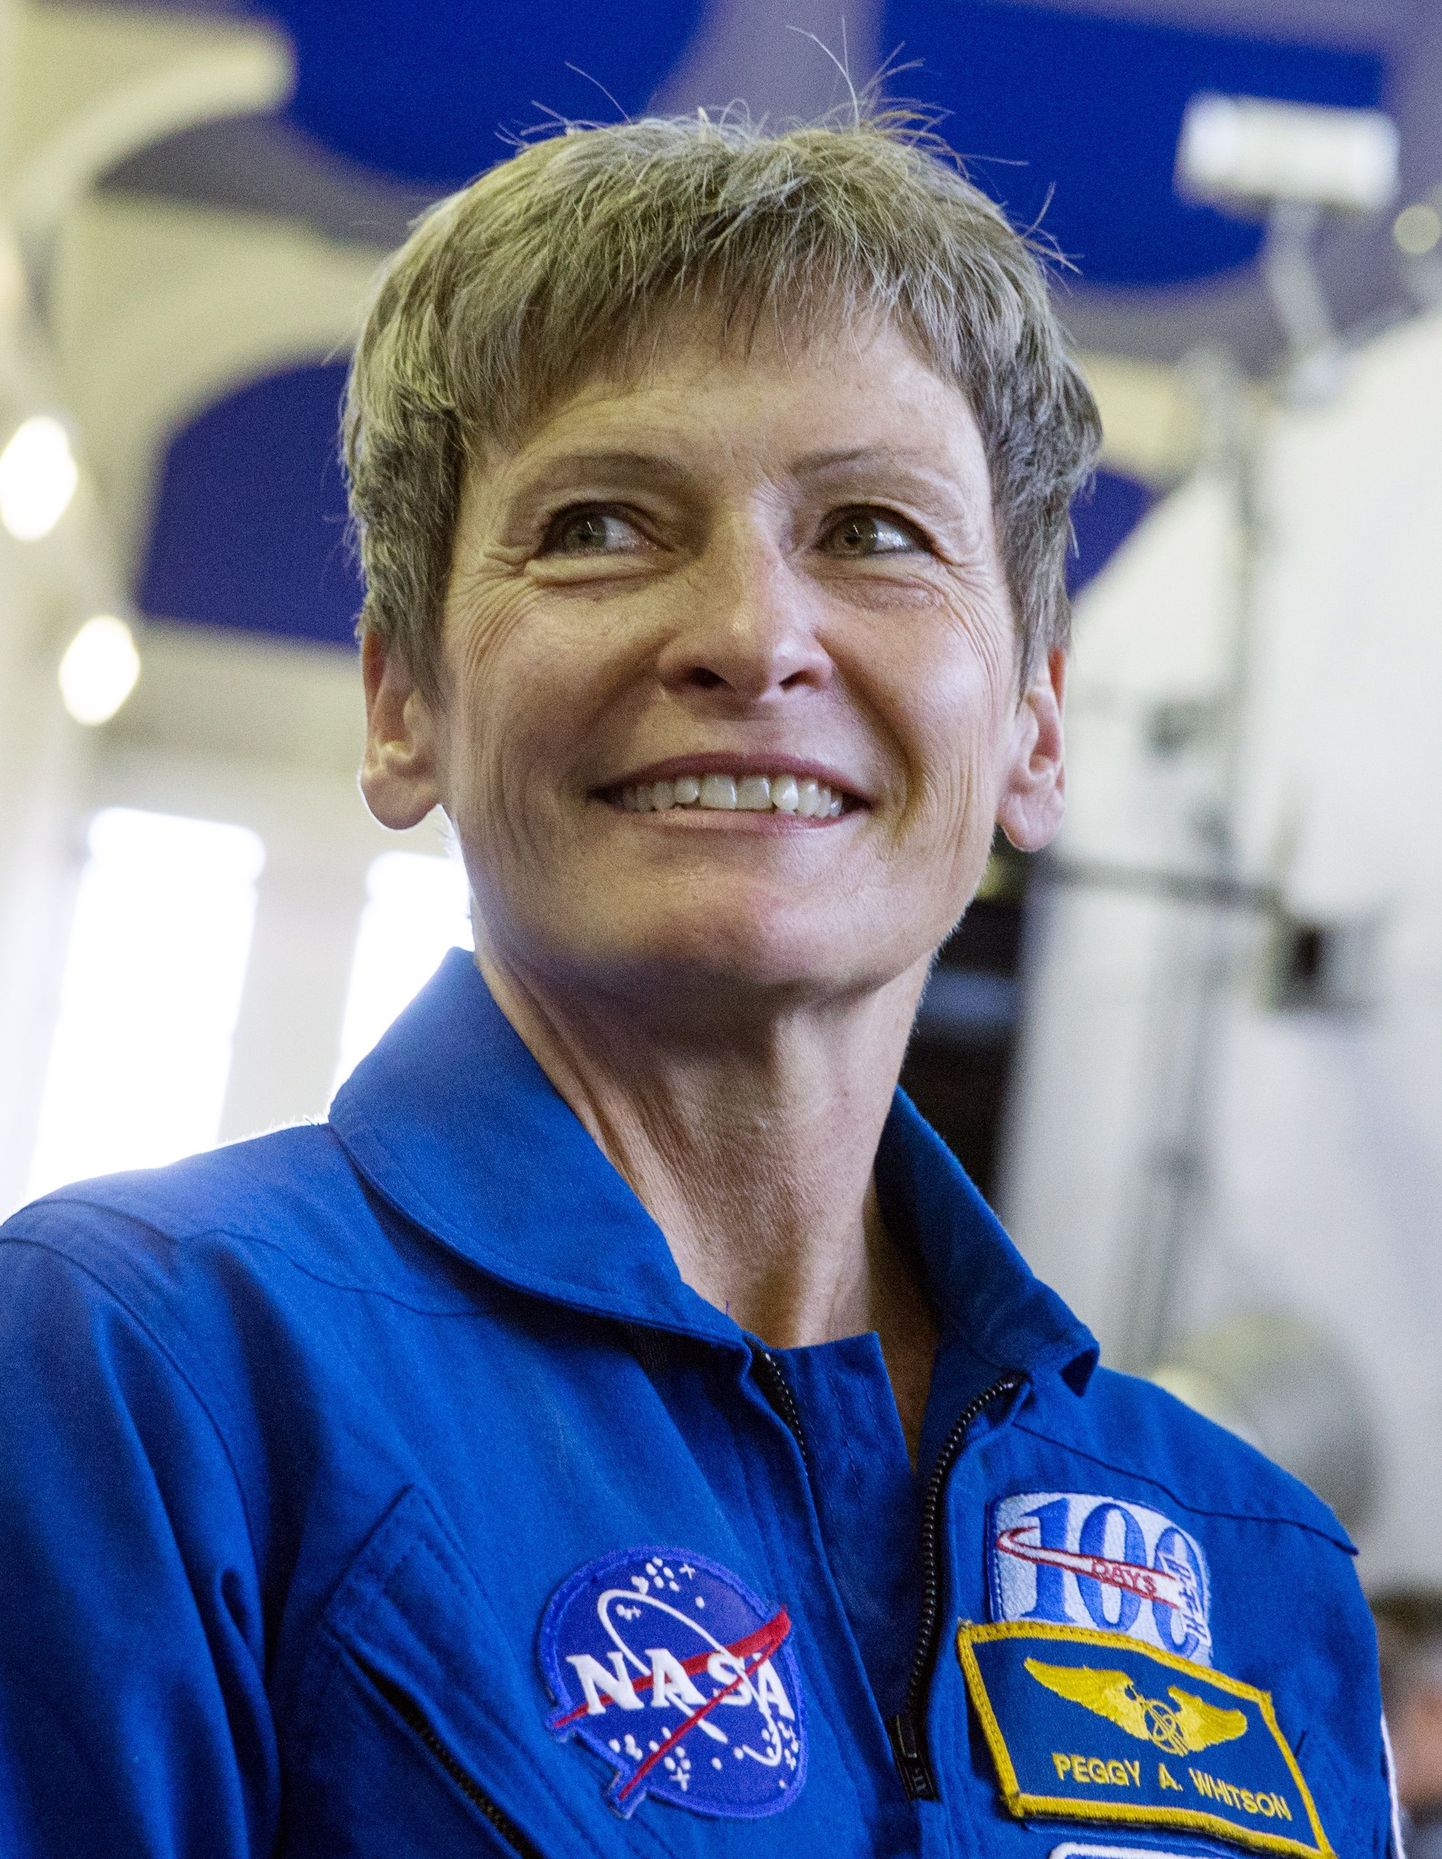 NASA astronaut Peggy Whitson.